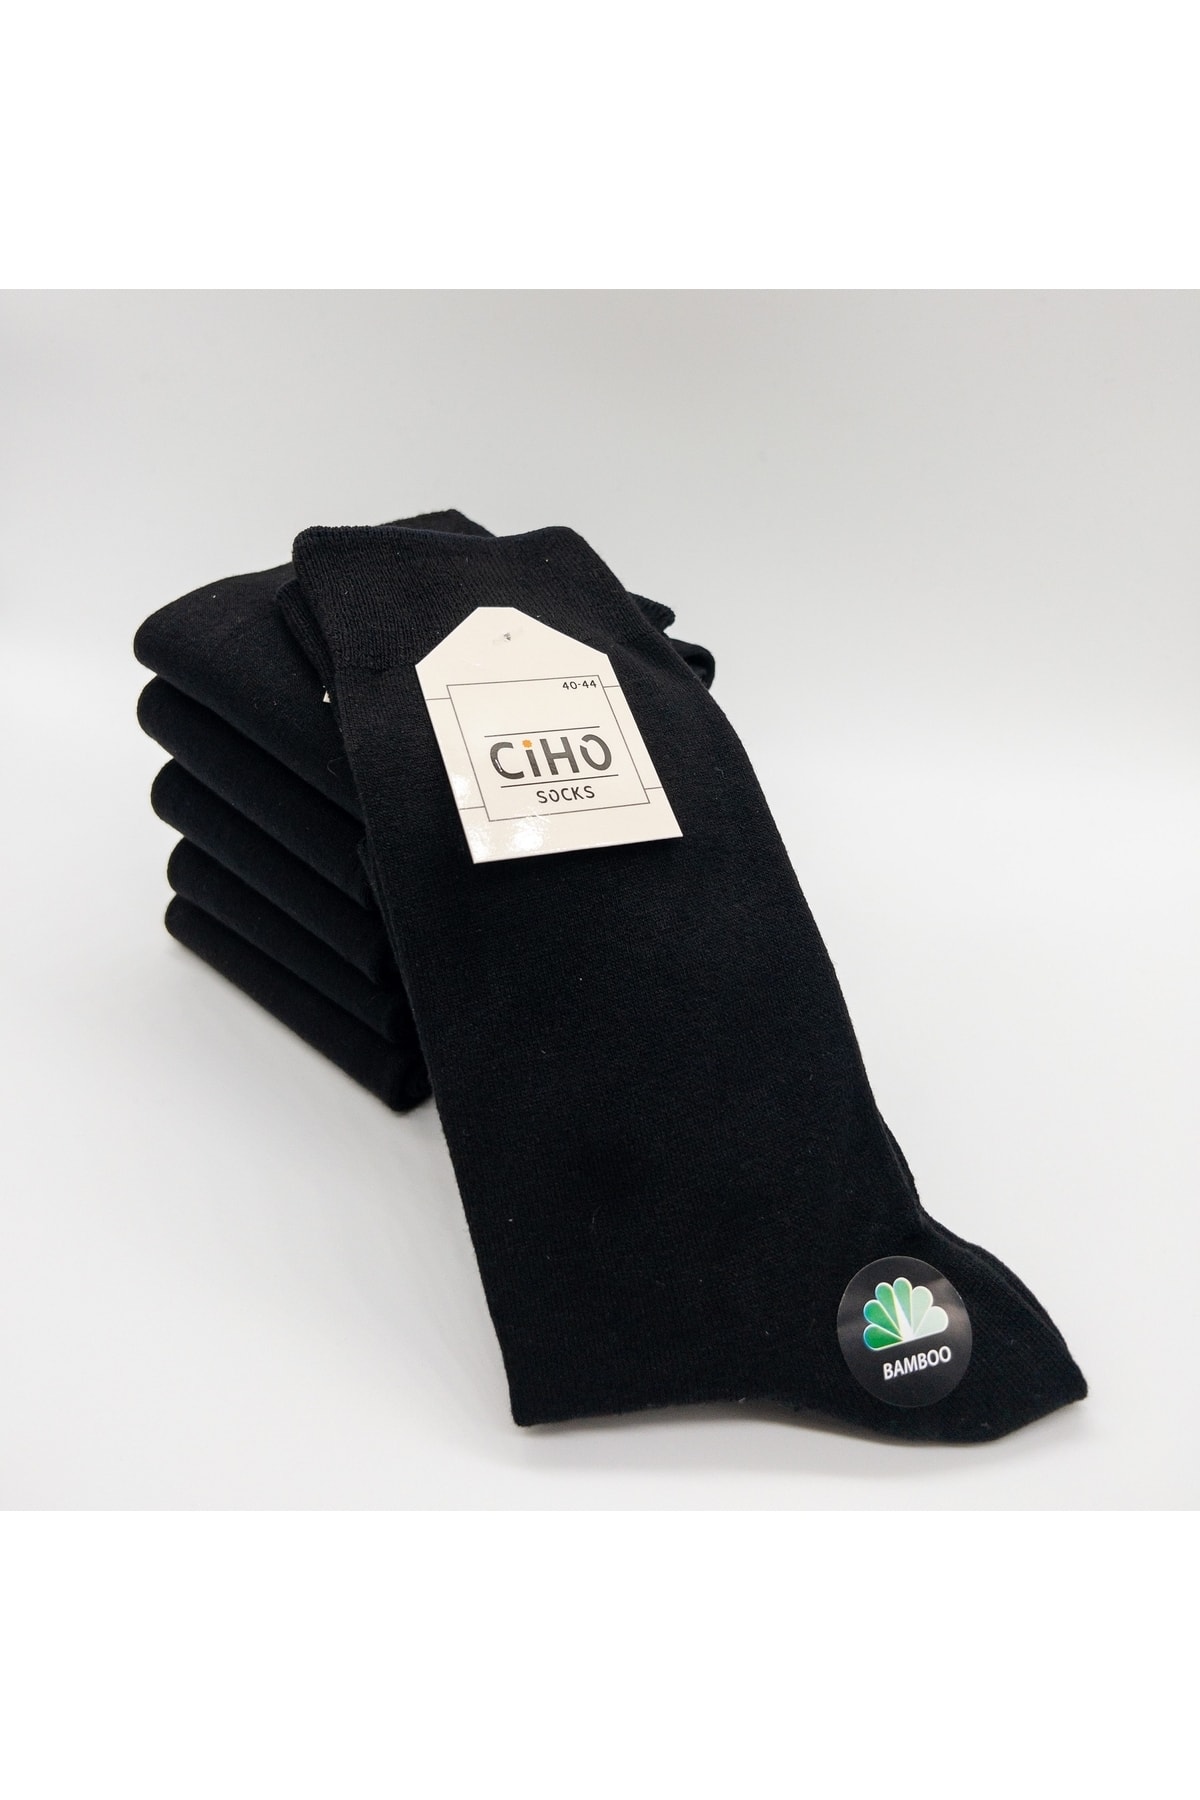 CİHO Socks Premium 6 Çift Bambu Dikişsiz Siyah Erkek Soket Çorap NE9328